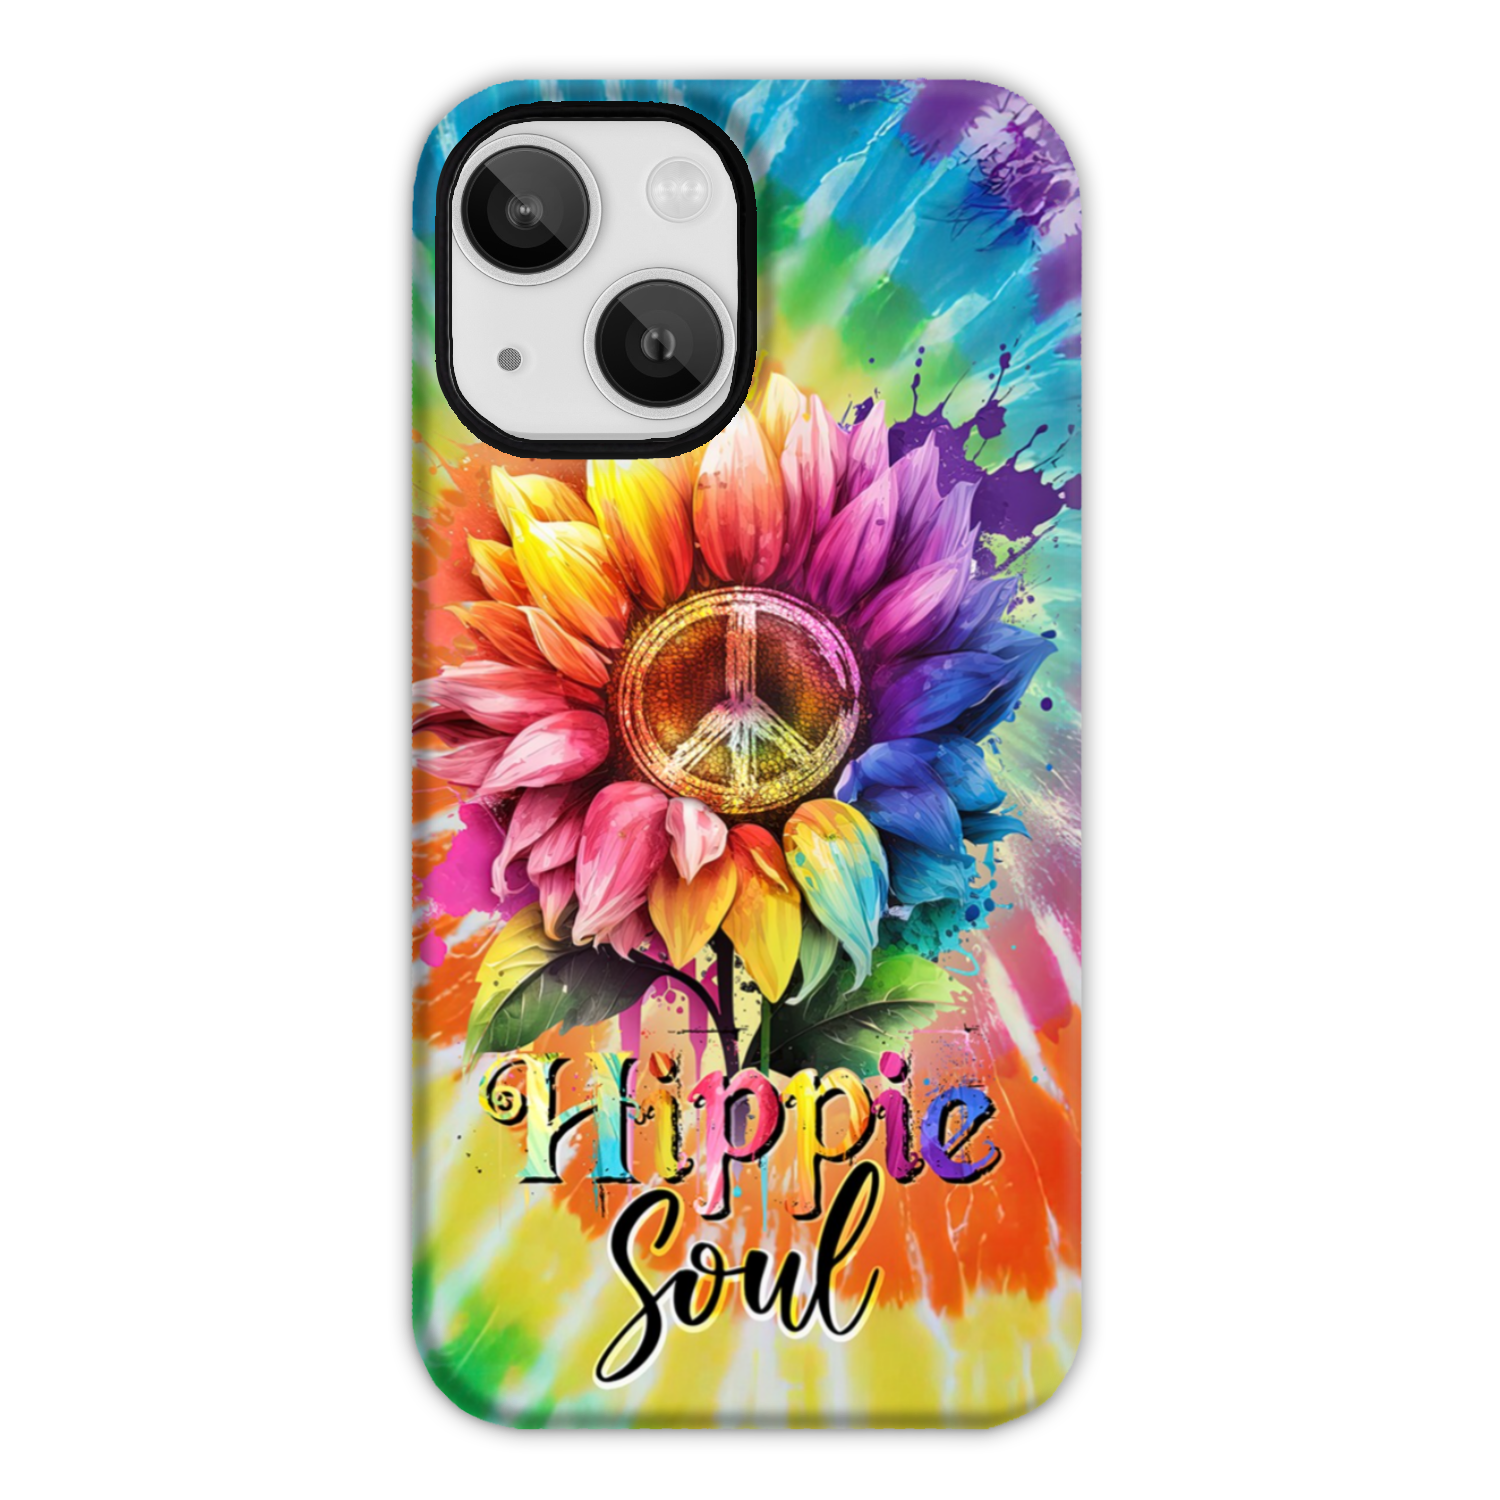 HIPPIE SOUL SUNFLOWER TIE DYE PHONE CASE - TY1702231